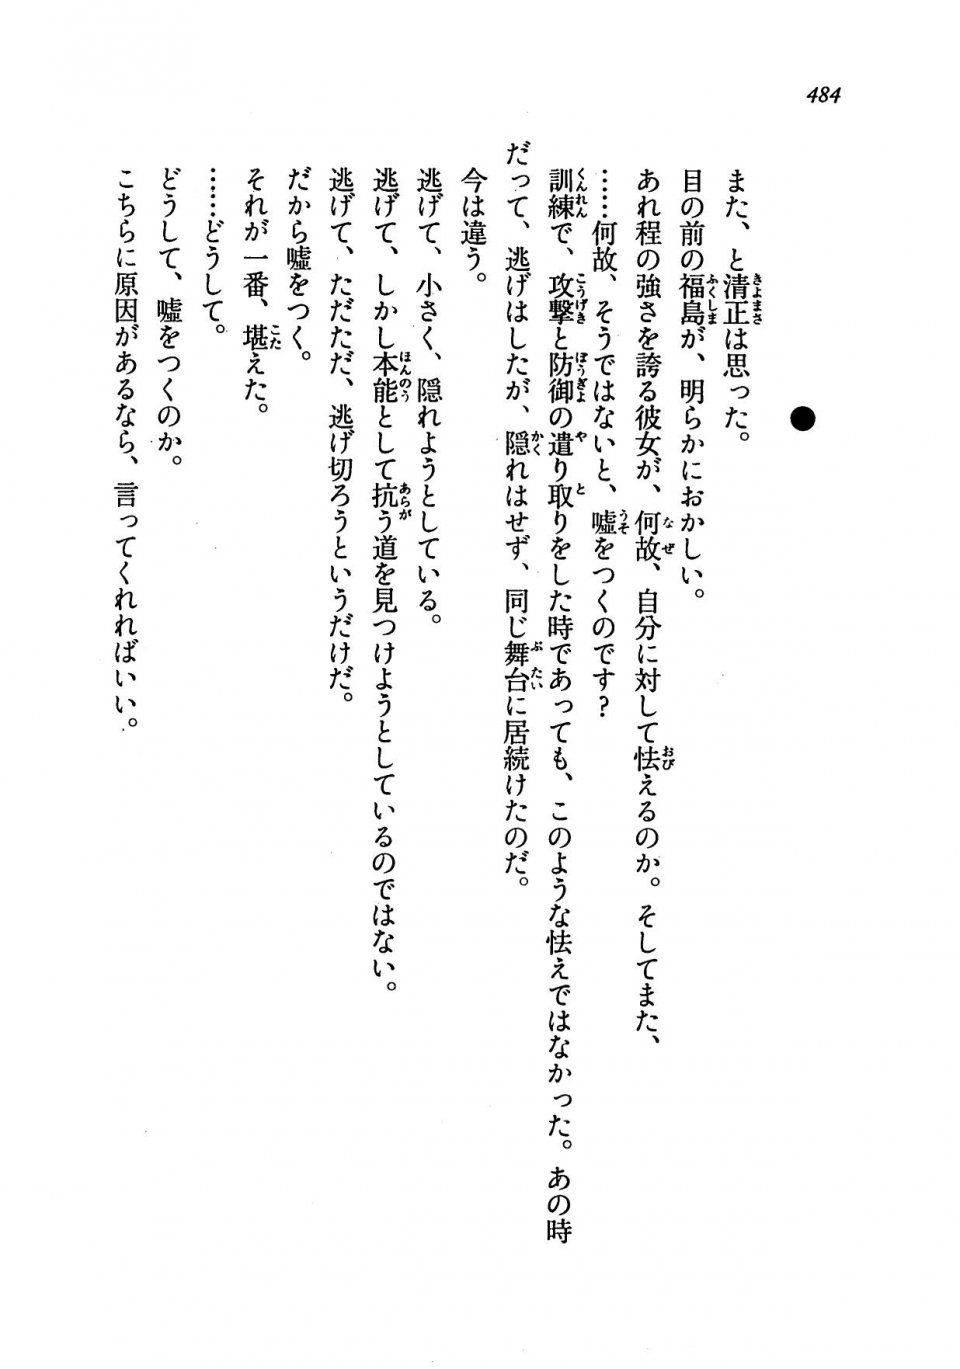 Kyoukai Senjou no Horizon LN Vol 19(8A) - Photo #484